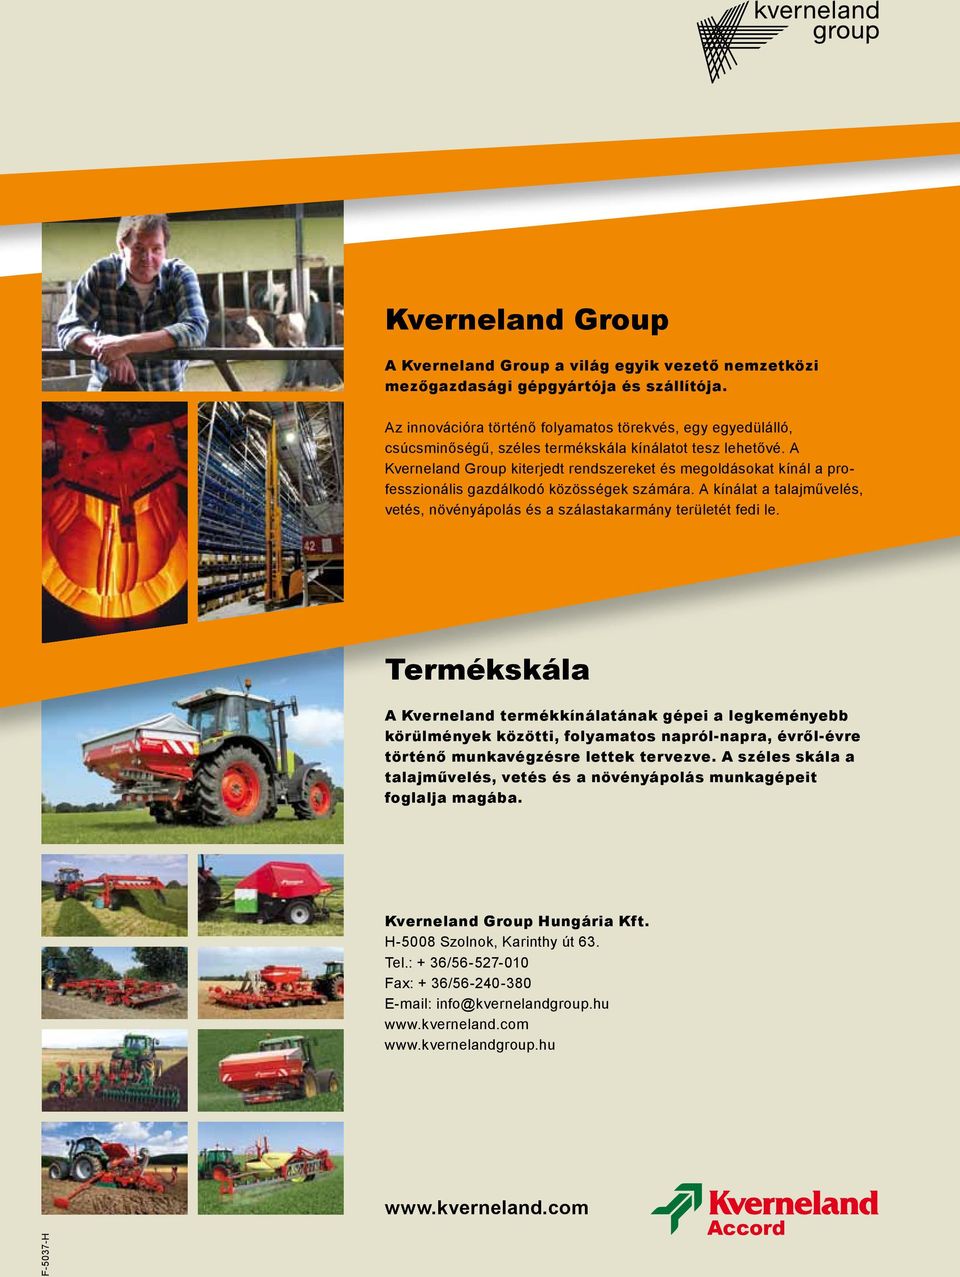 A Kverneland Group kiterjedt rendszereket és megoldásokat kínál a professzionális gazdálkodó közösségek számára. A kínálat a talajművelés, vetés, növényápolás és a szálastakarmány területét fedi le.